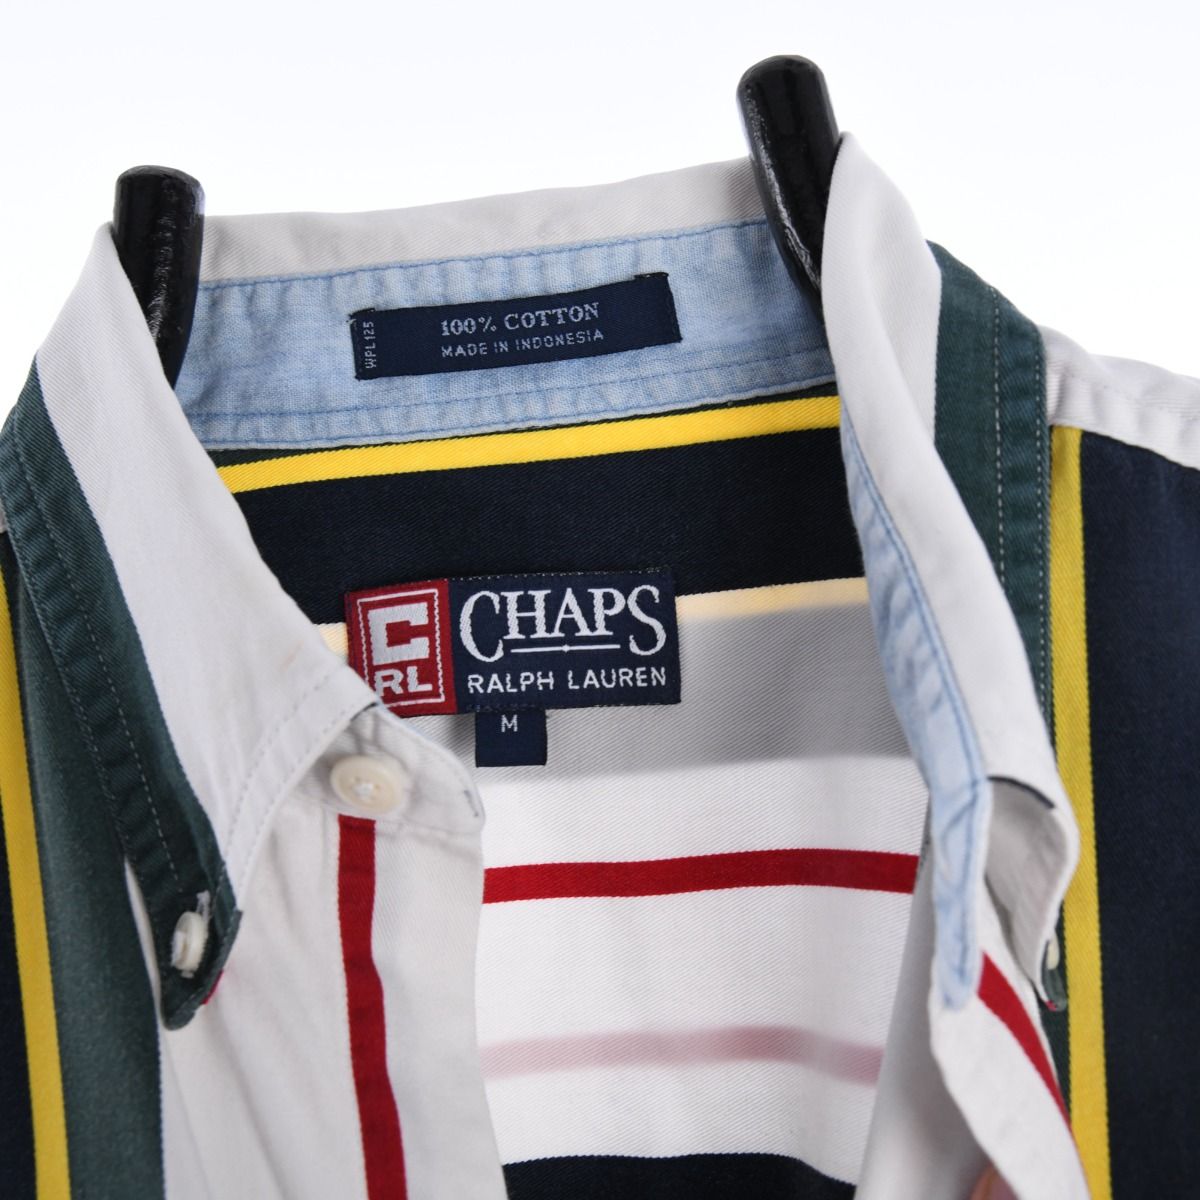 Ralph Lauren Chaps Short Sleeve Shirt